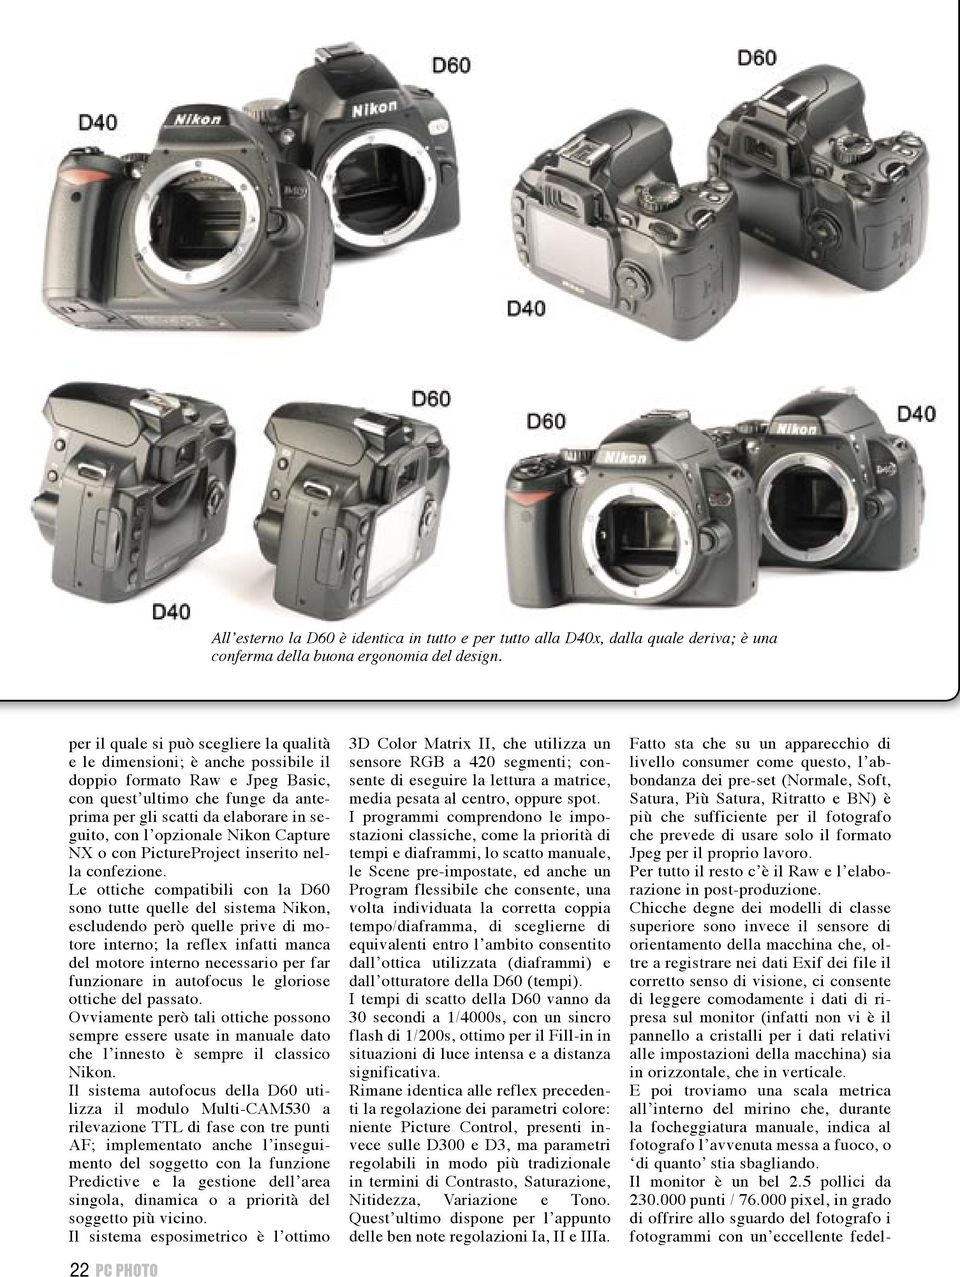 opzionale Nikon Capture NX o con PictureProject inserito nella confezione.